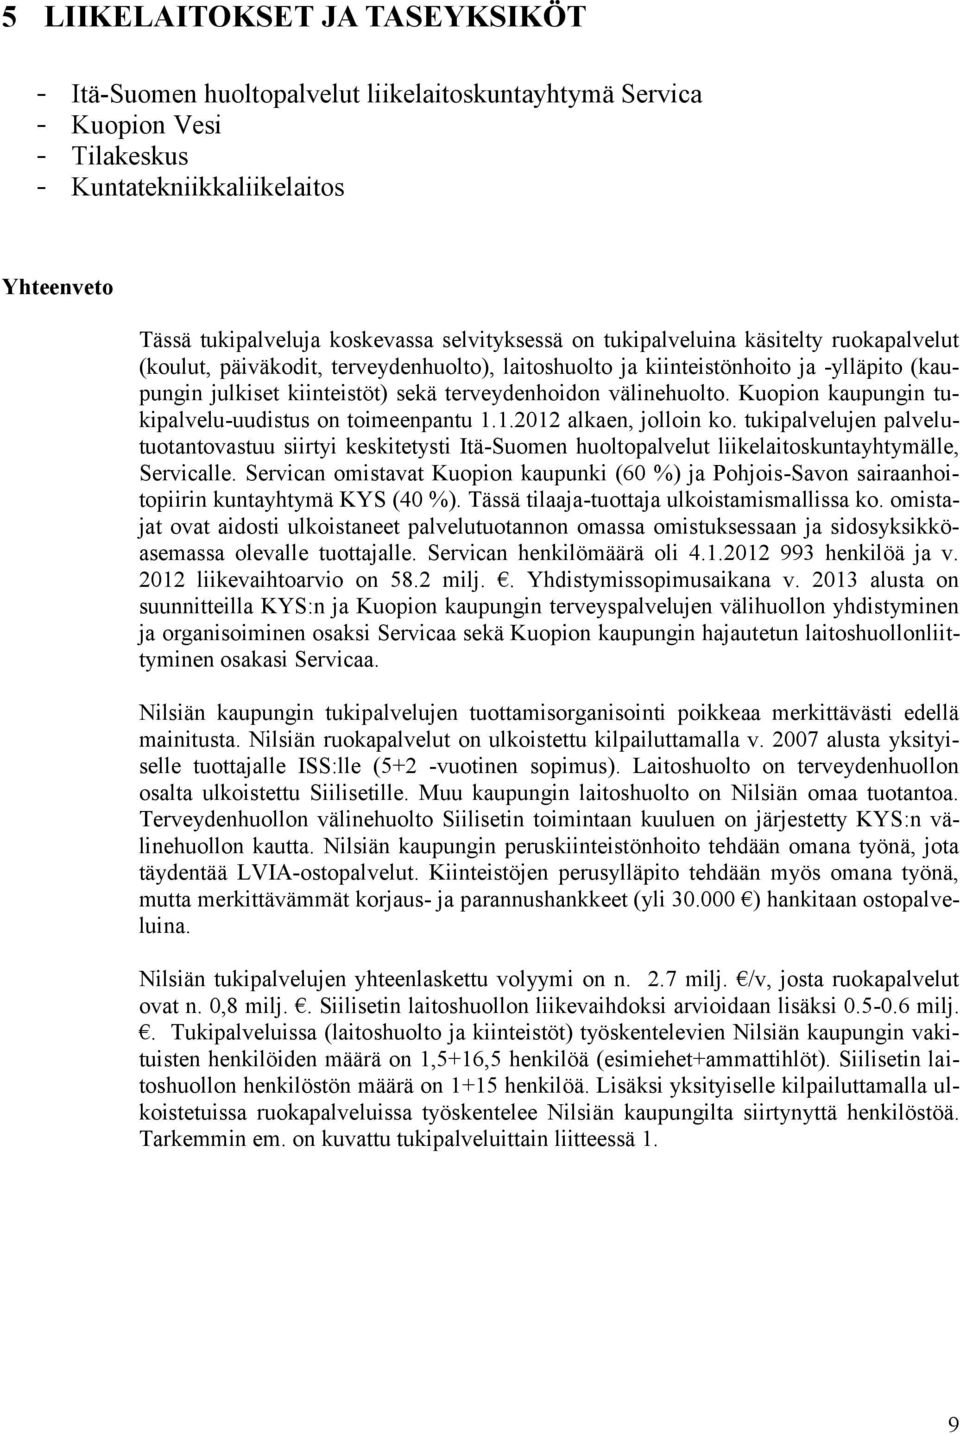 välinehuolto. Kuopion kaupungin tukipalvelu-uudistus on toimeenpantu 1.1.2012 alkaen, jolloin ko.